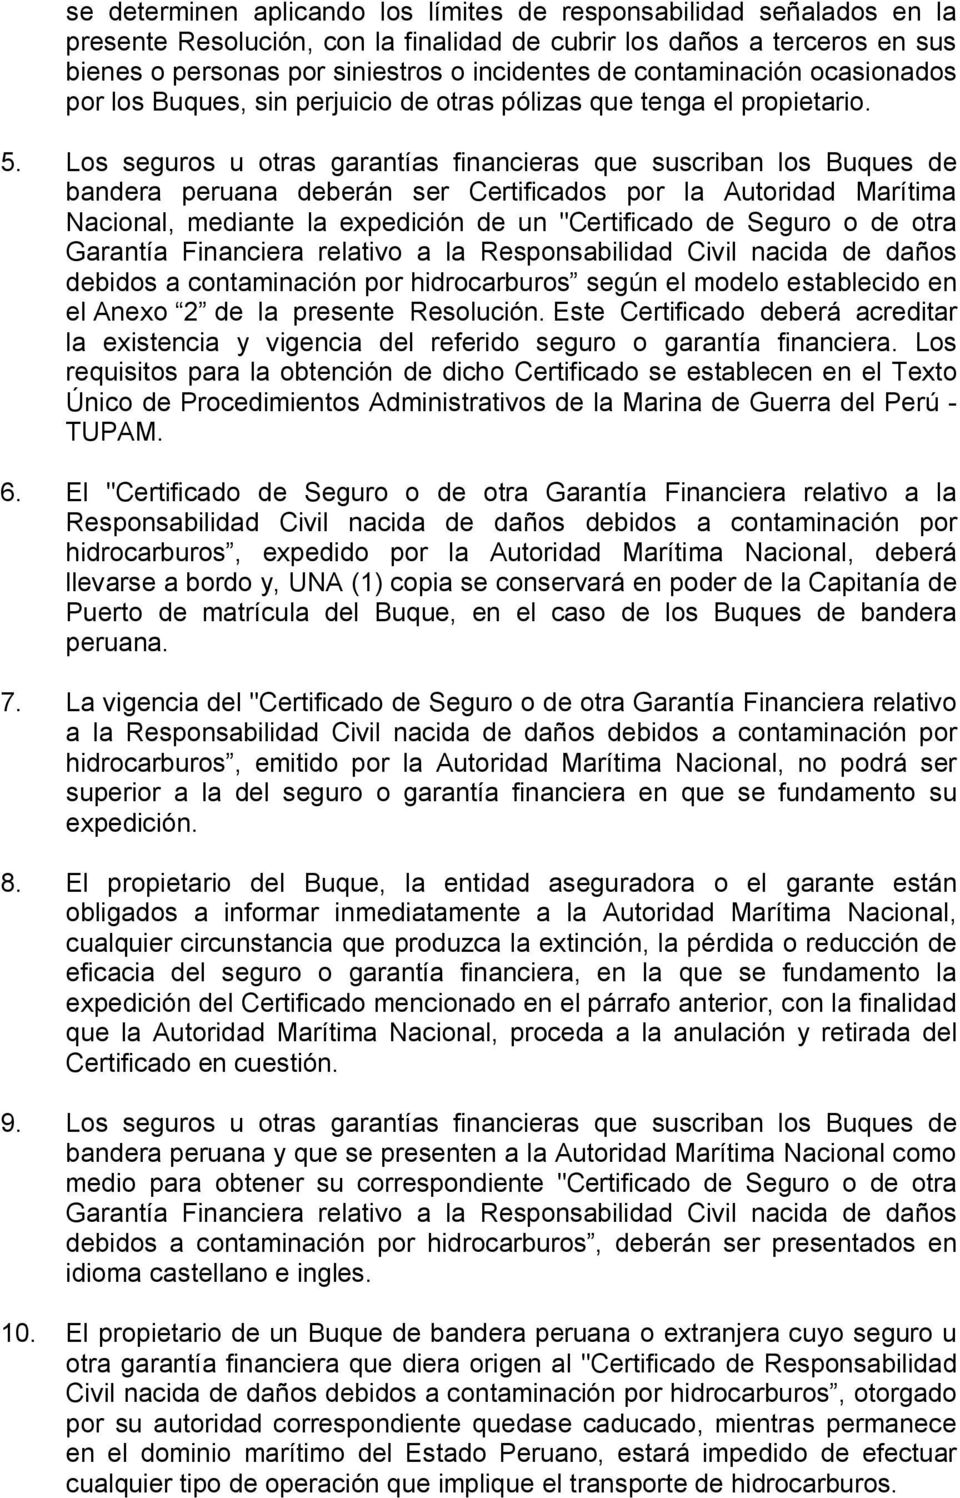 Los seguros u otras garantías financieras que suscriban los Buques de bandera peruana deberán ser Certificados por la Autoridad Marítima Nacional, mediante la expedición de un "Certificado de Seguro